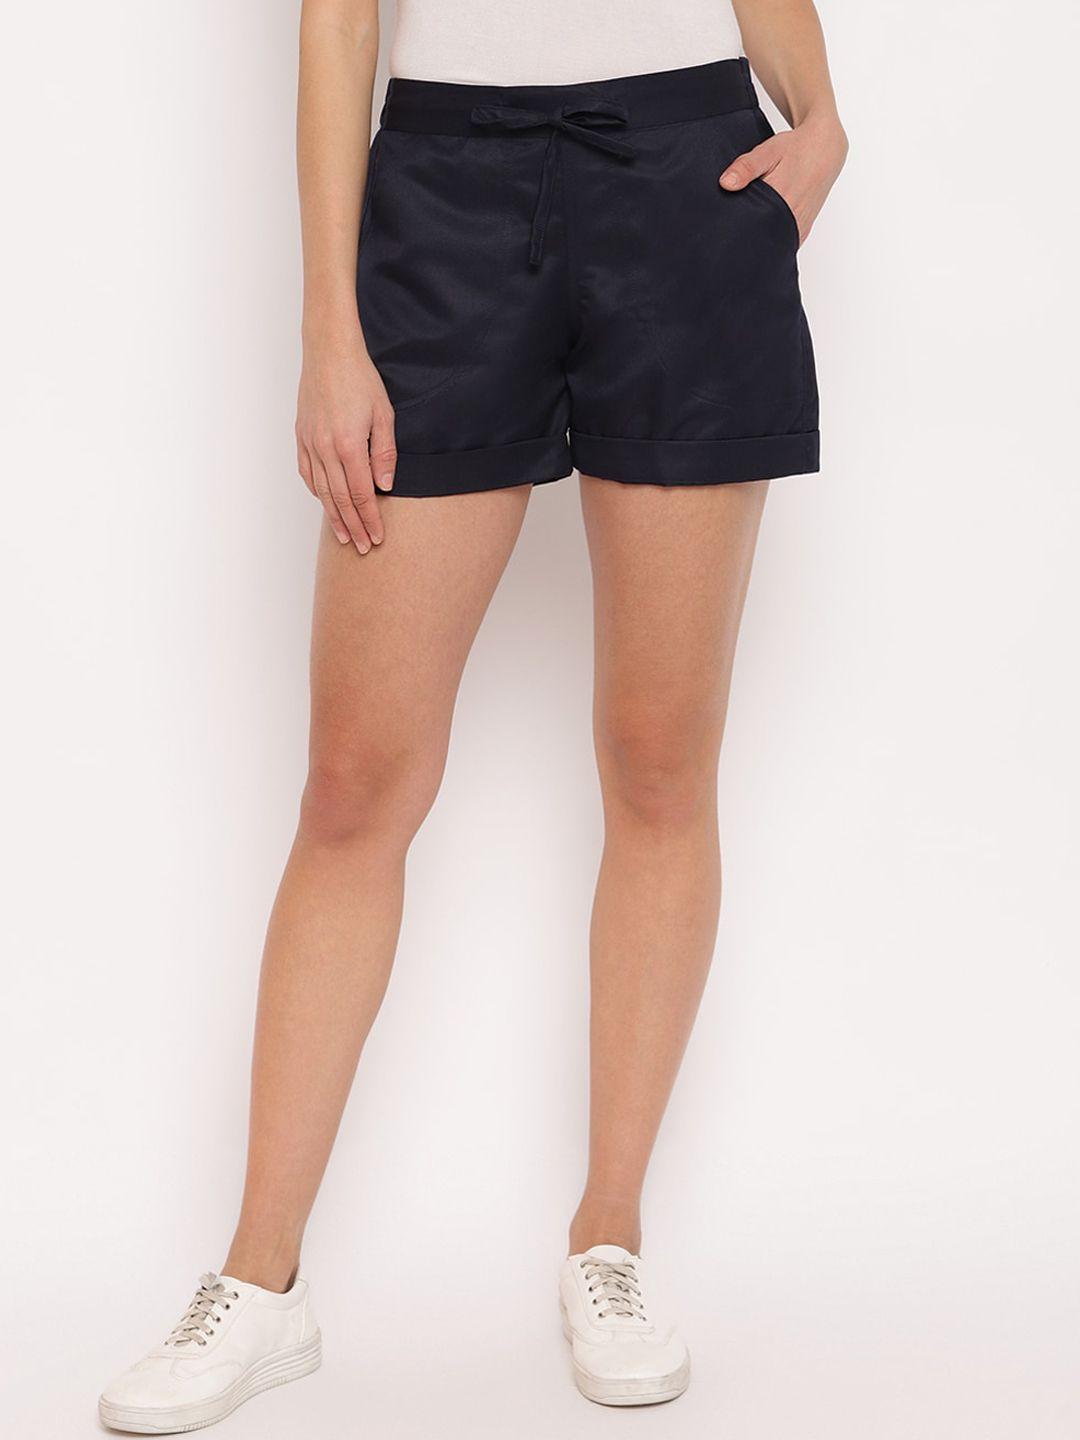 mayra women navy blue solid regular fit regular shorts